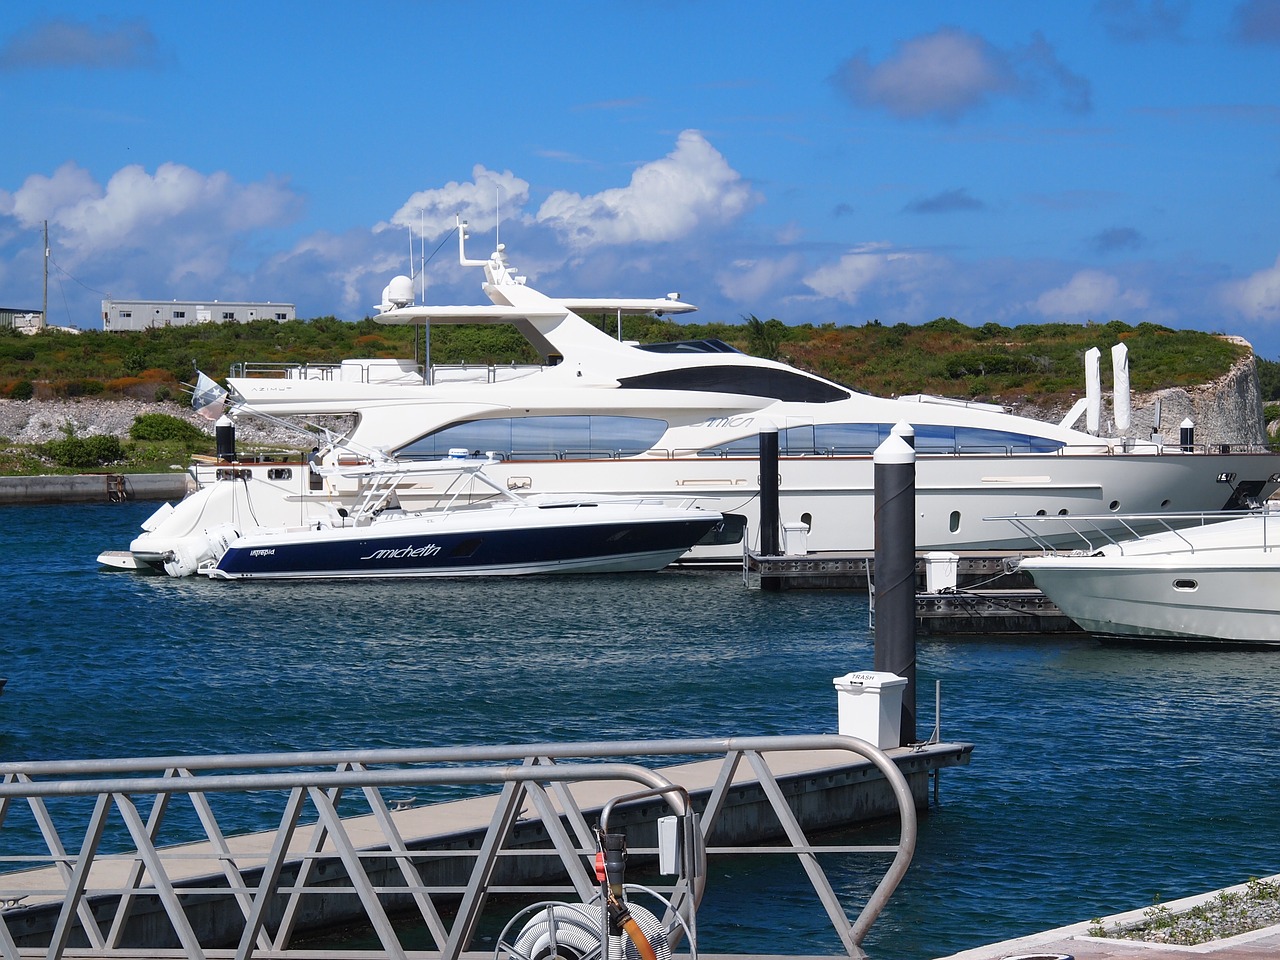 yacht beach bahamas free photo